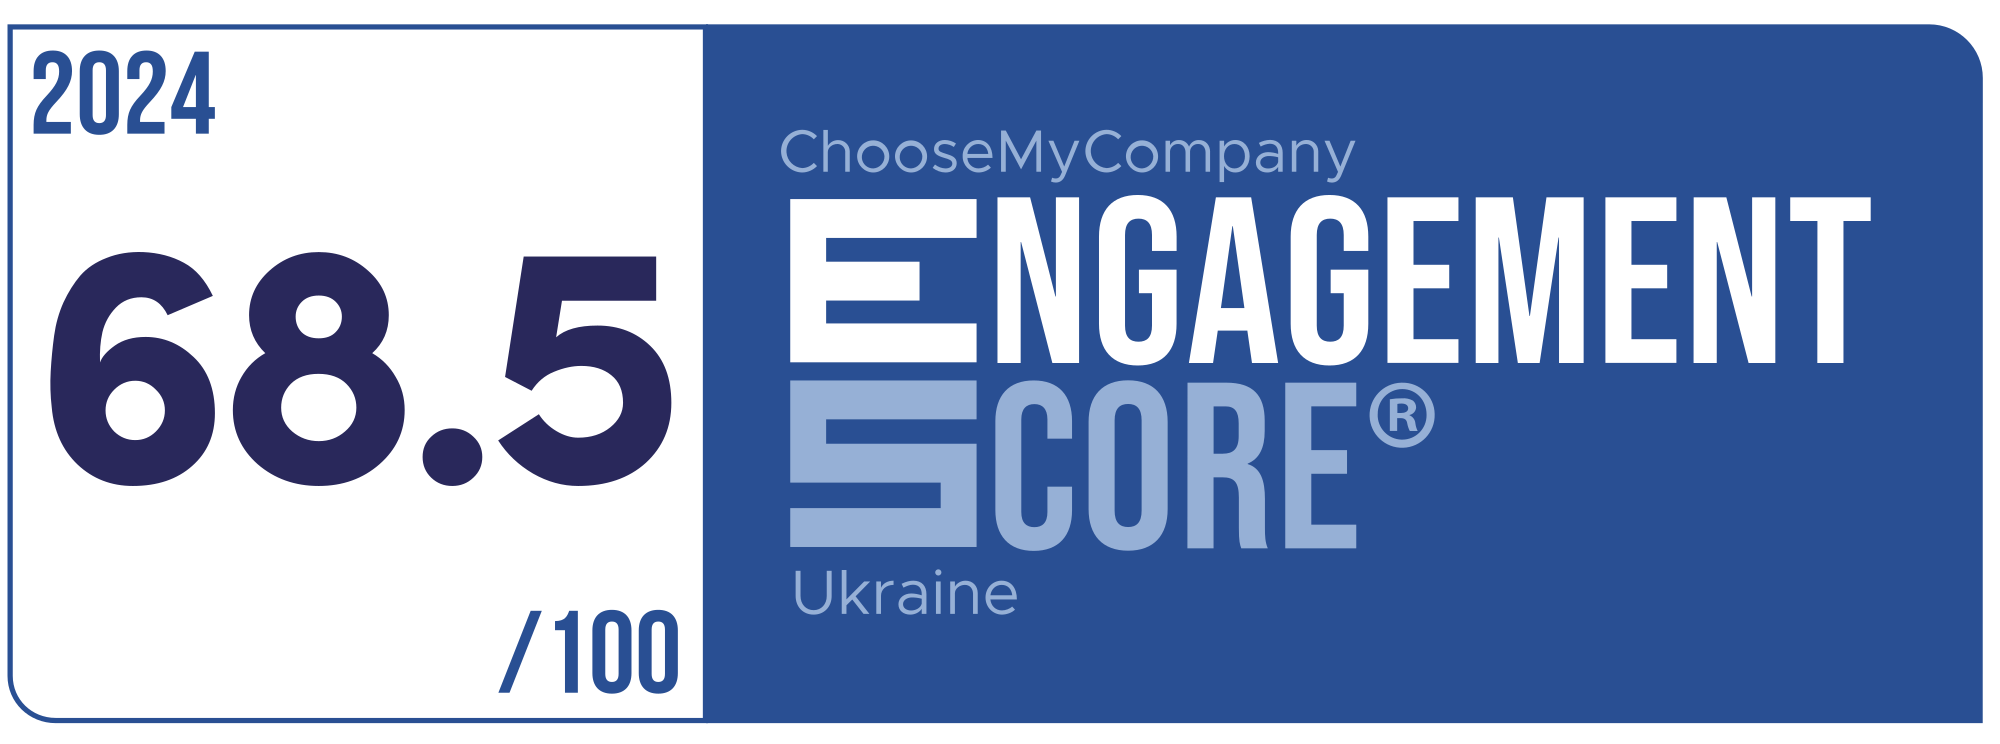 Label Engagement Score 2024 Ukraine